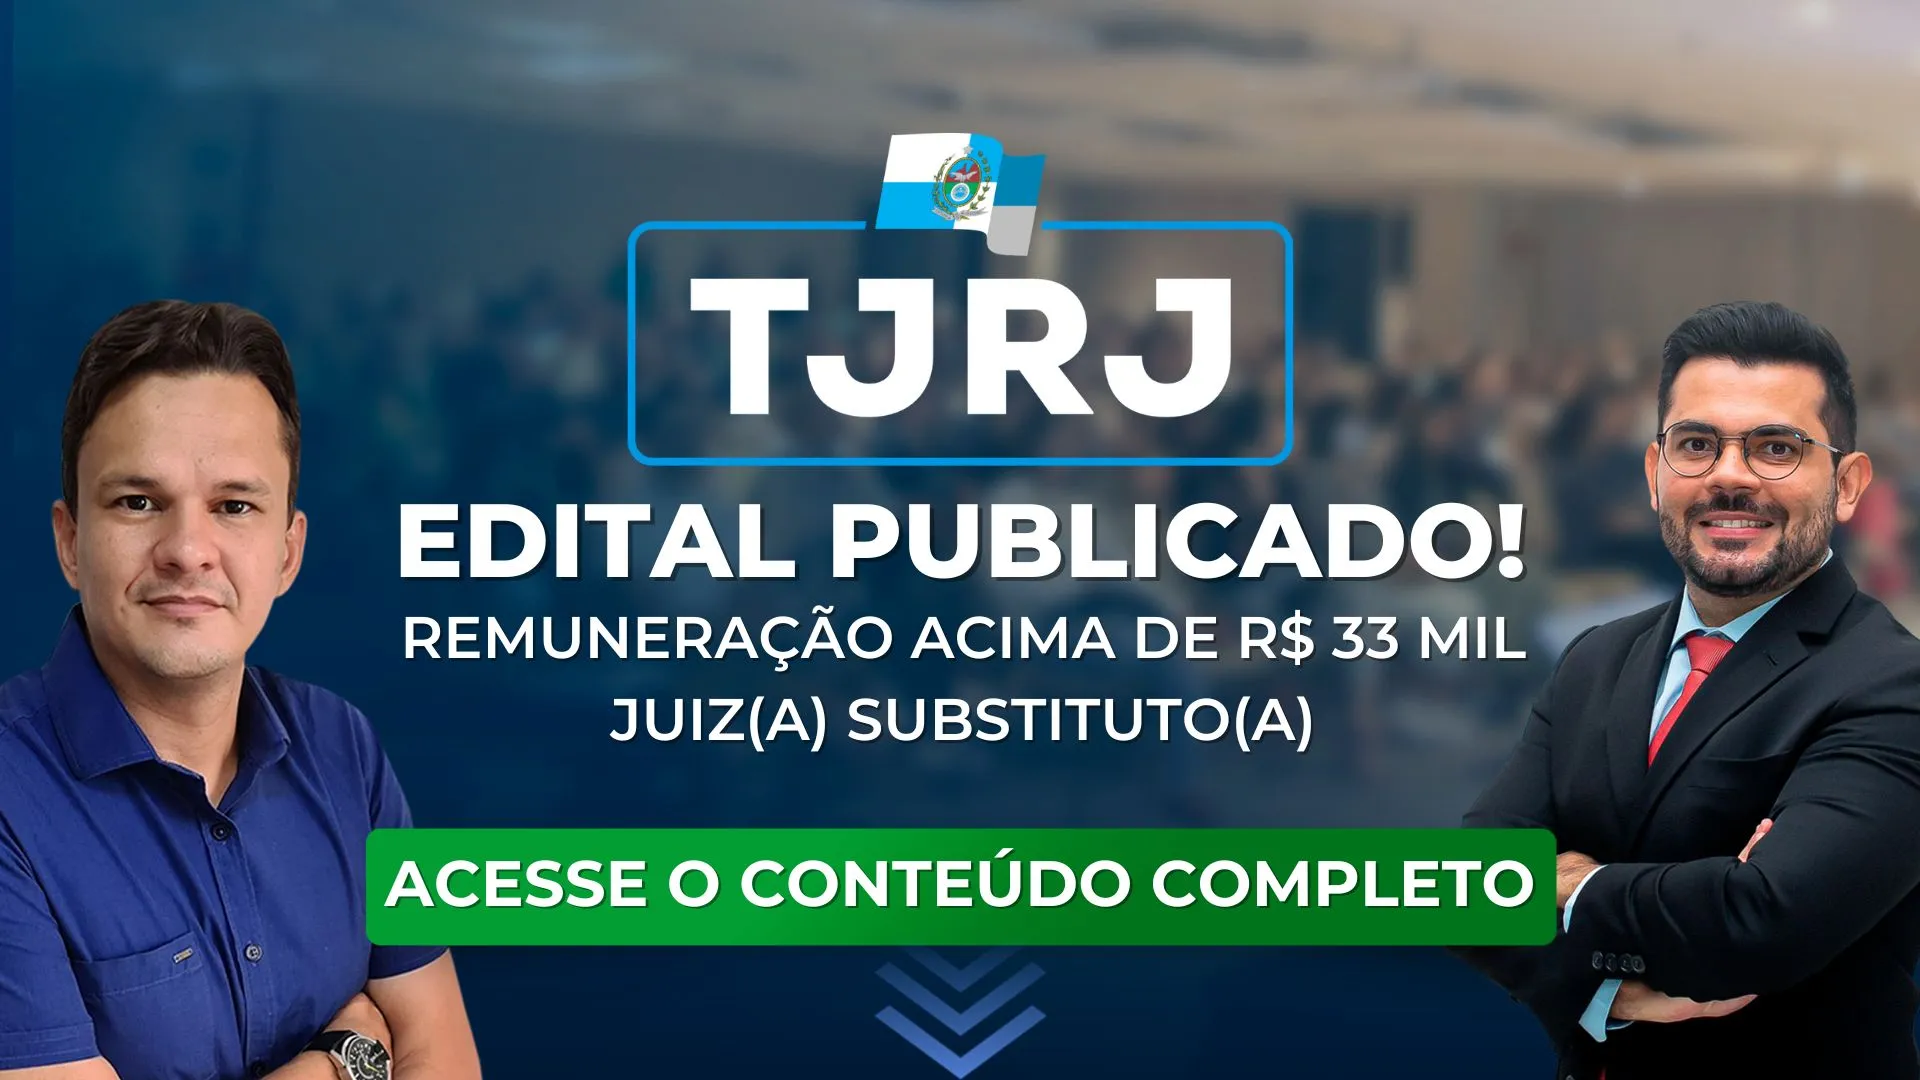 TJRJ: Edital do concurso para juiz publicado! Remuneração acima de 33 mil